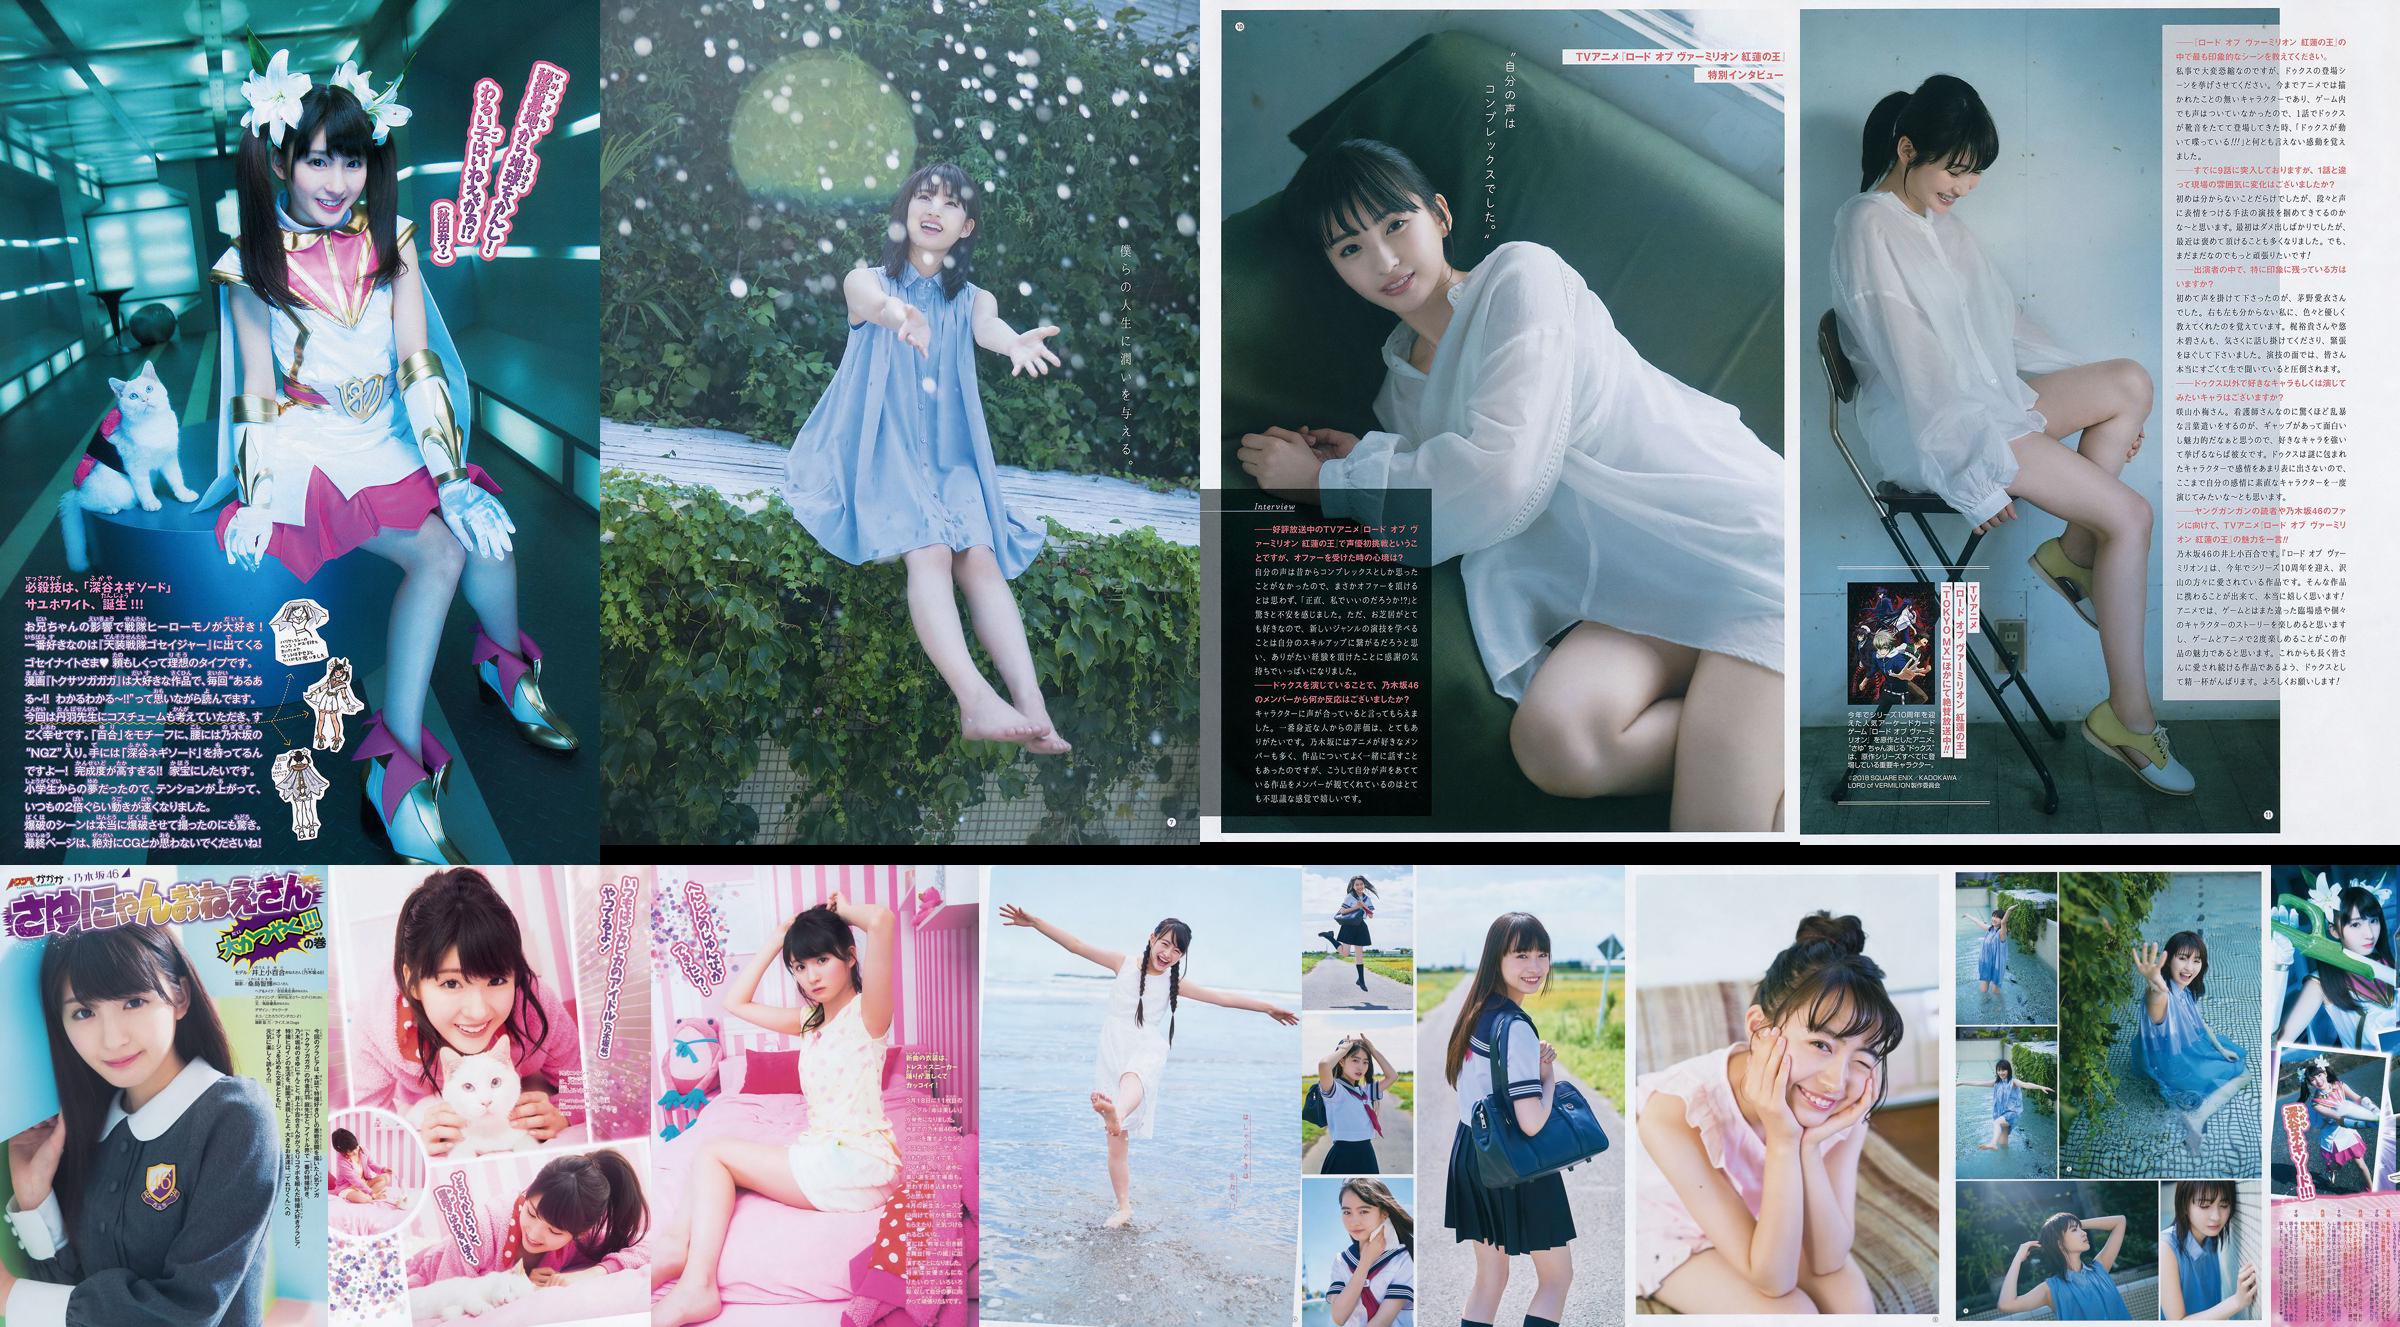 [Young Gangan] Sayuri Inoue Its original sand 2018 No.18 Photo Magazine No.1c995f Page 2